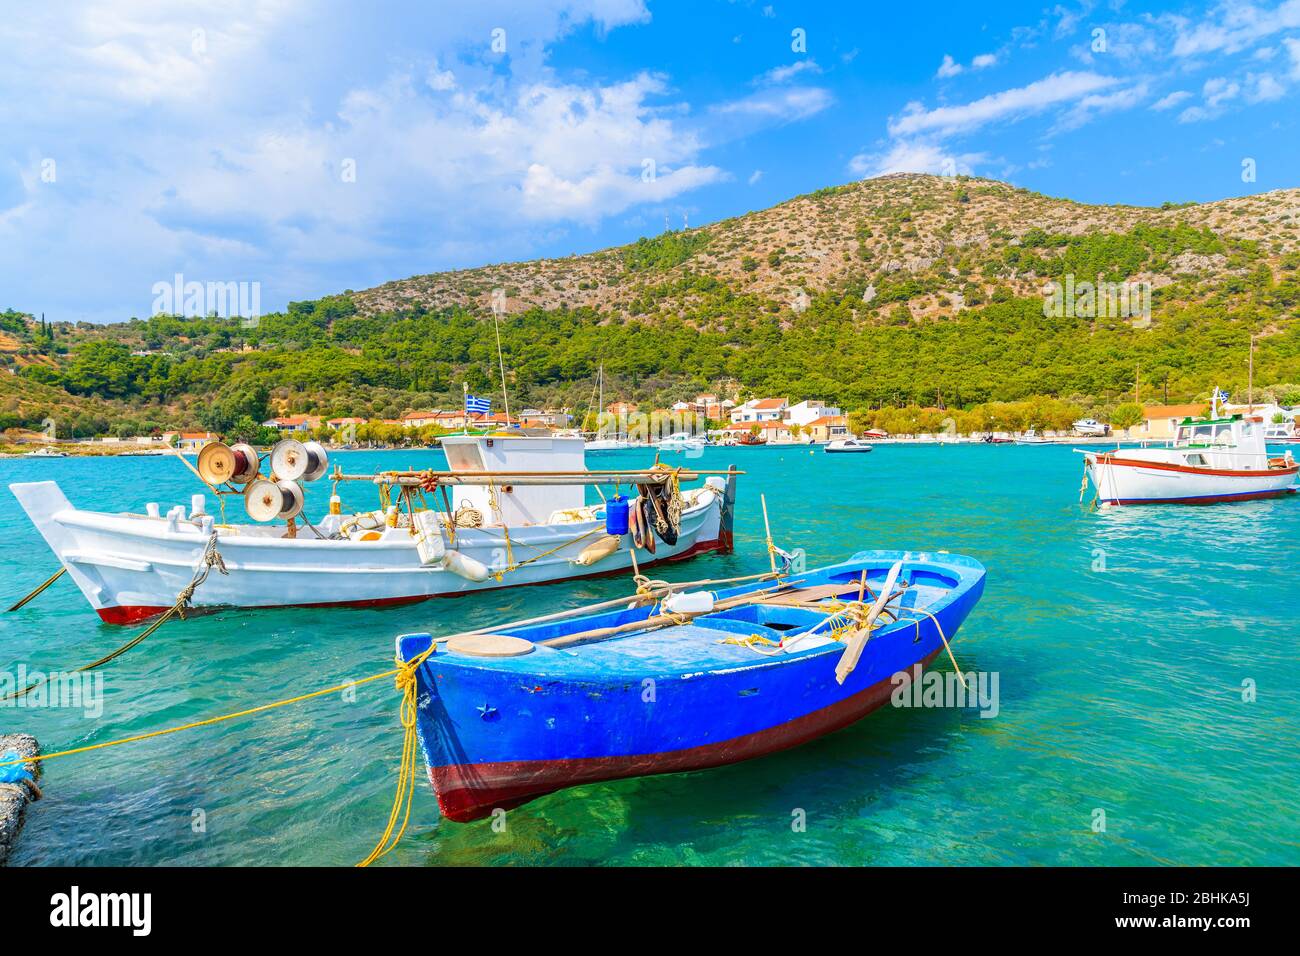 Coloridos barcos de pesca griegos en mar turquesa en la bahía de Posidonio, isla de Samos, Grecia Foto de stock